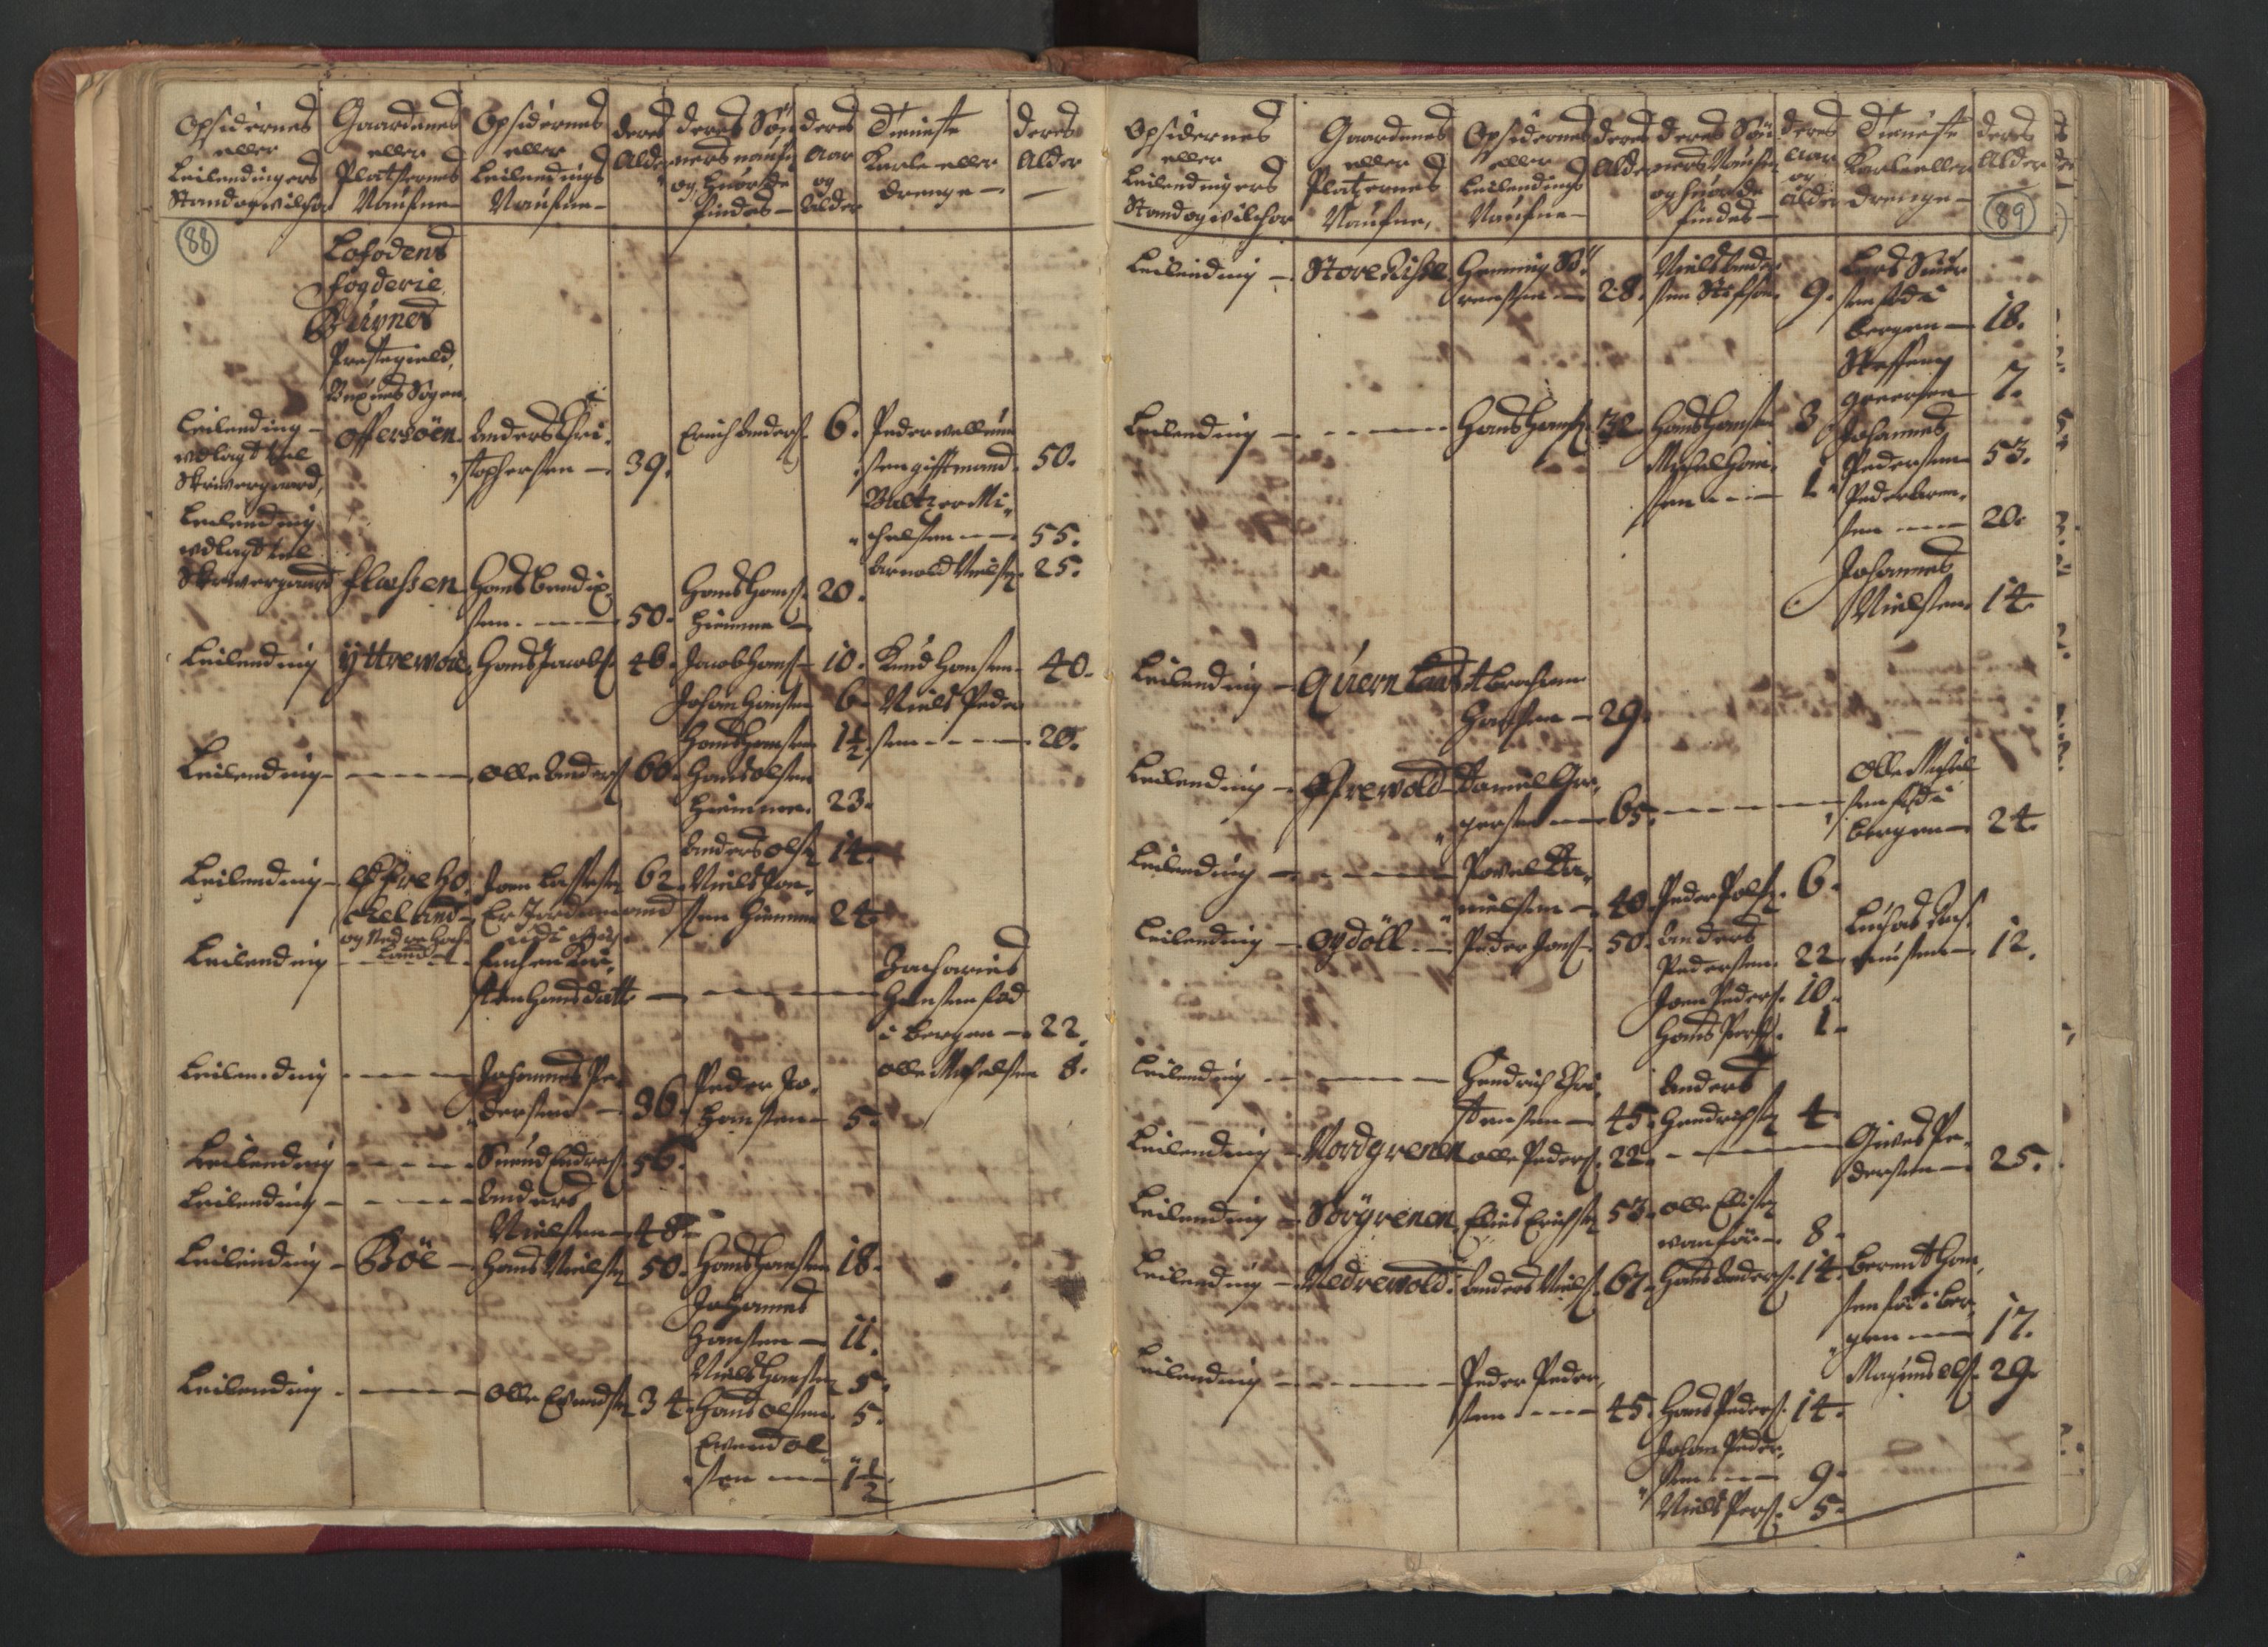 RA, Census (manntall) 1701, no. 18: Vesterålen, Andenes and Lofoten fogderi, 1701, p. 88-89